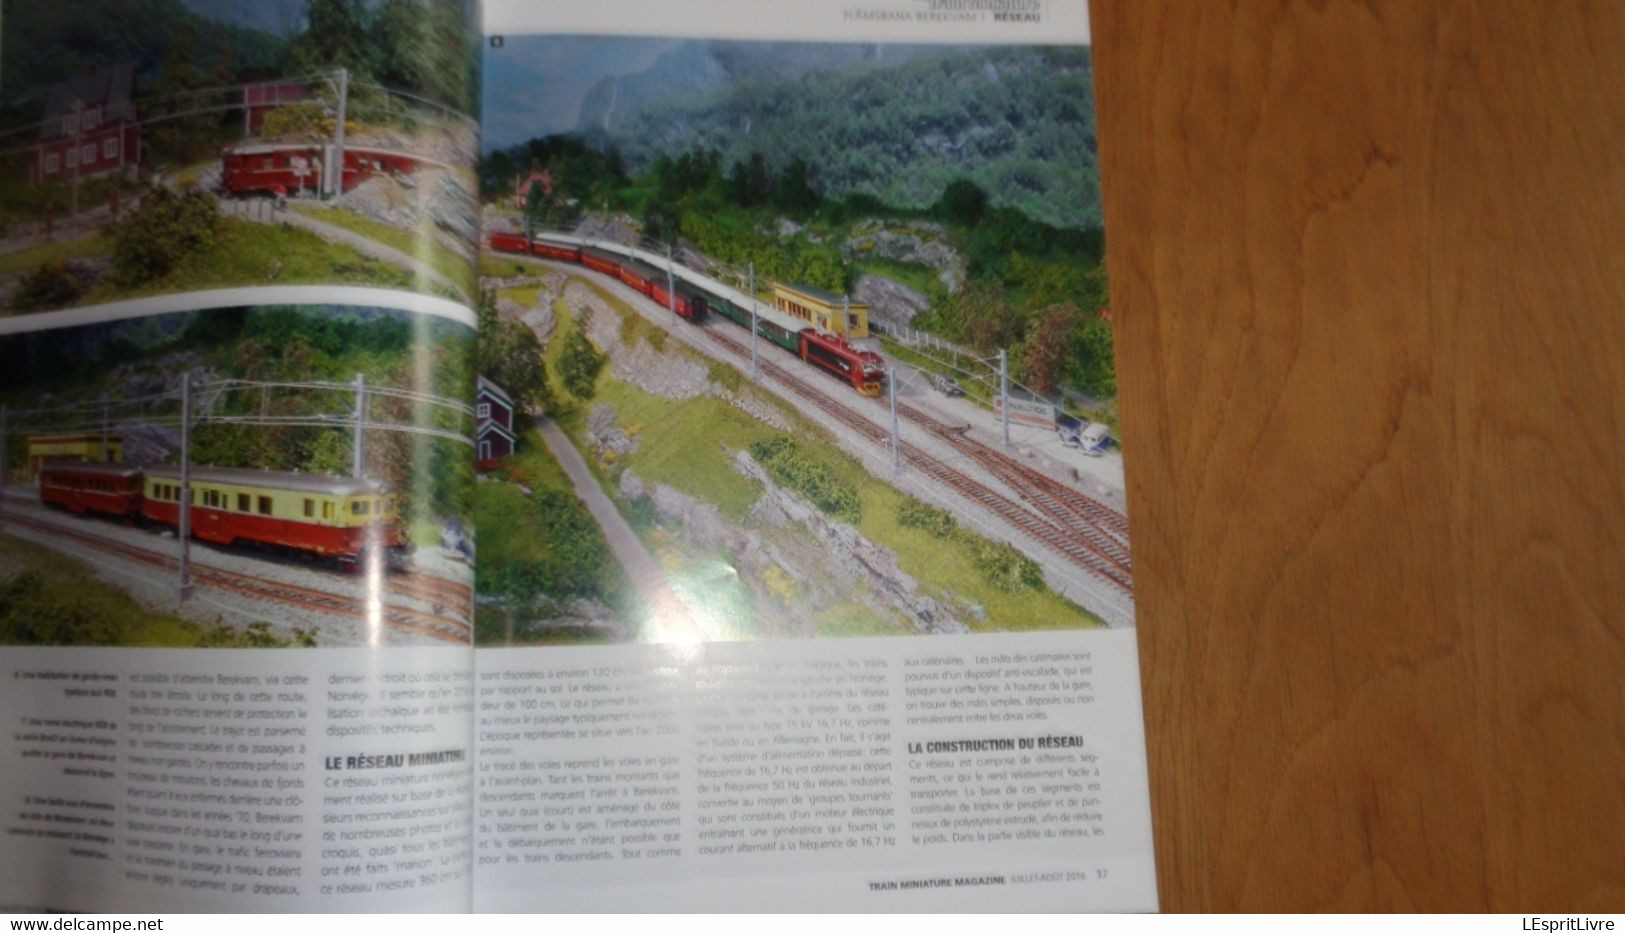 TRAIN MINIATURE N° 160 Chemins de Fer Rail Revue Modélisme Maquettisme SNCB NMBS 11 Réseaux Arlbergbahn Vallée Loue